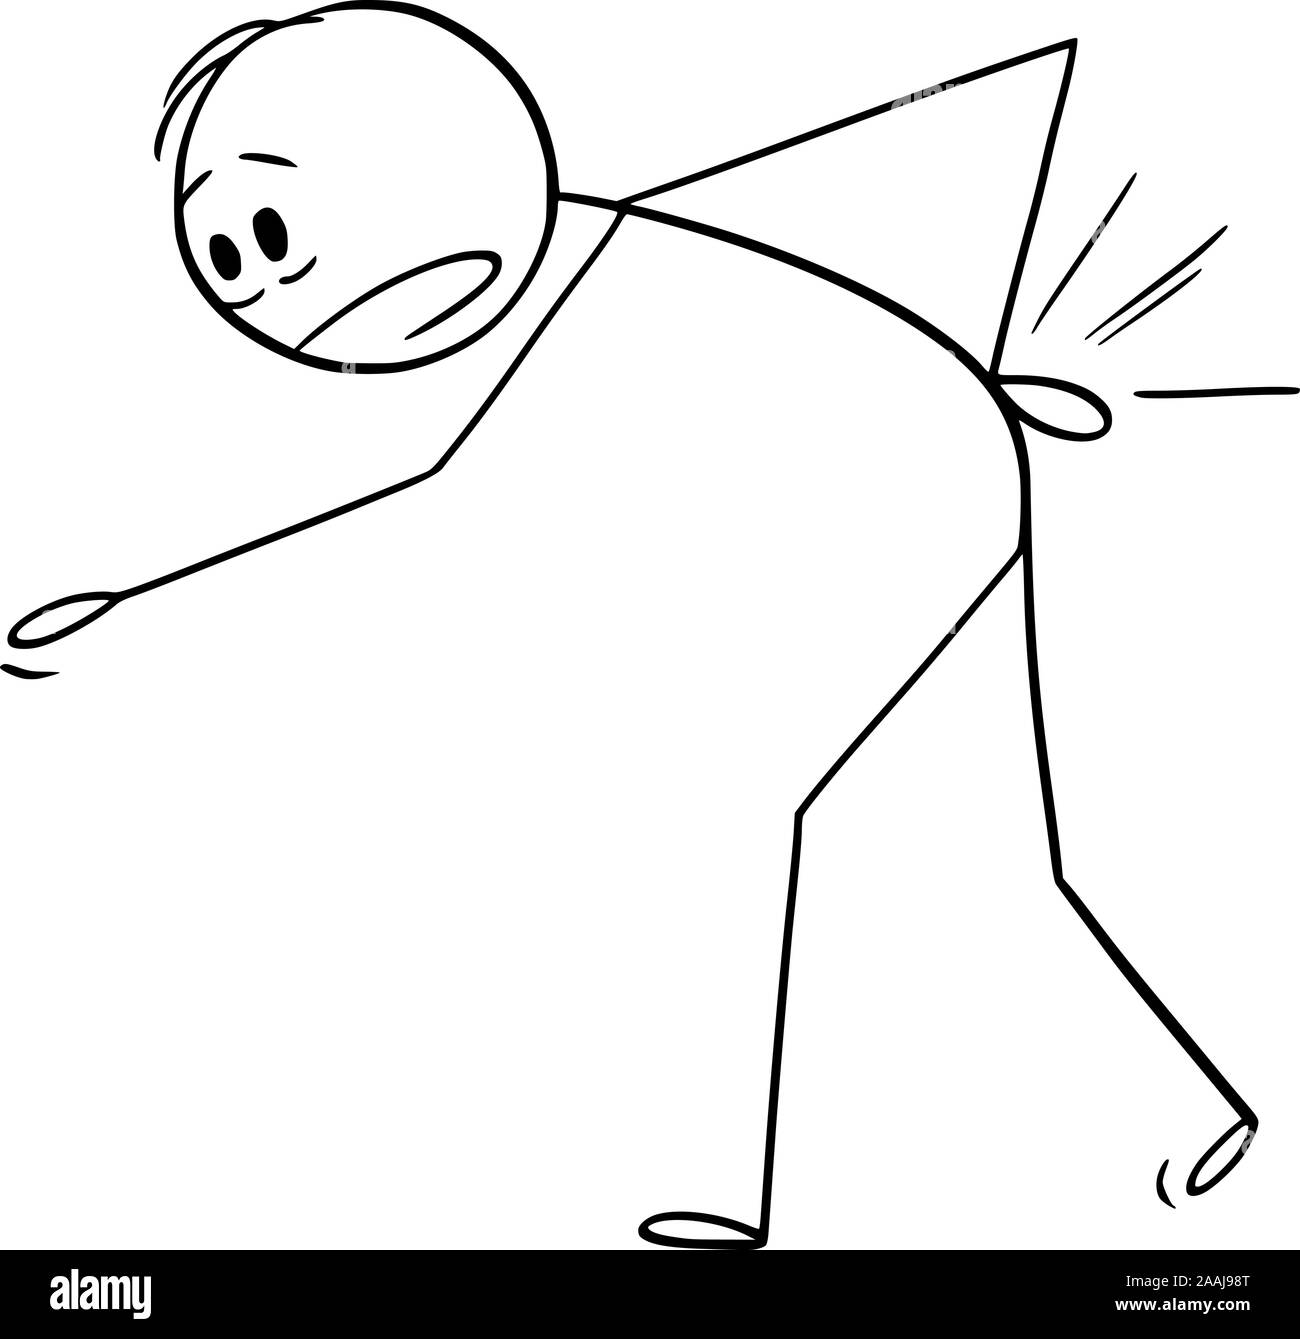 Vector cartoon stick figure dessin illustration conceptuelle de l'homme souffrant de douleur ou de dos et tenant son dos blessé. Illustration de Vecteur